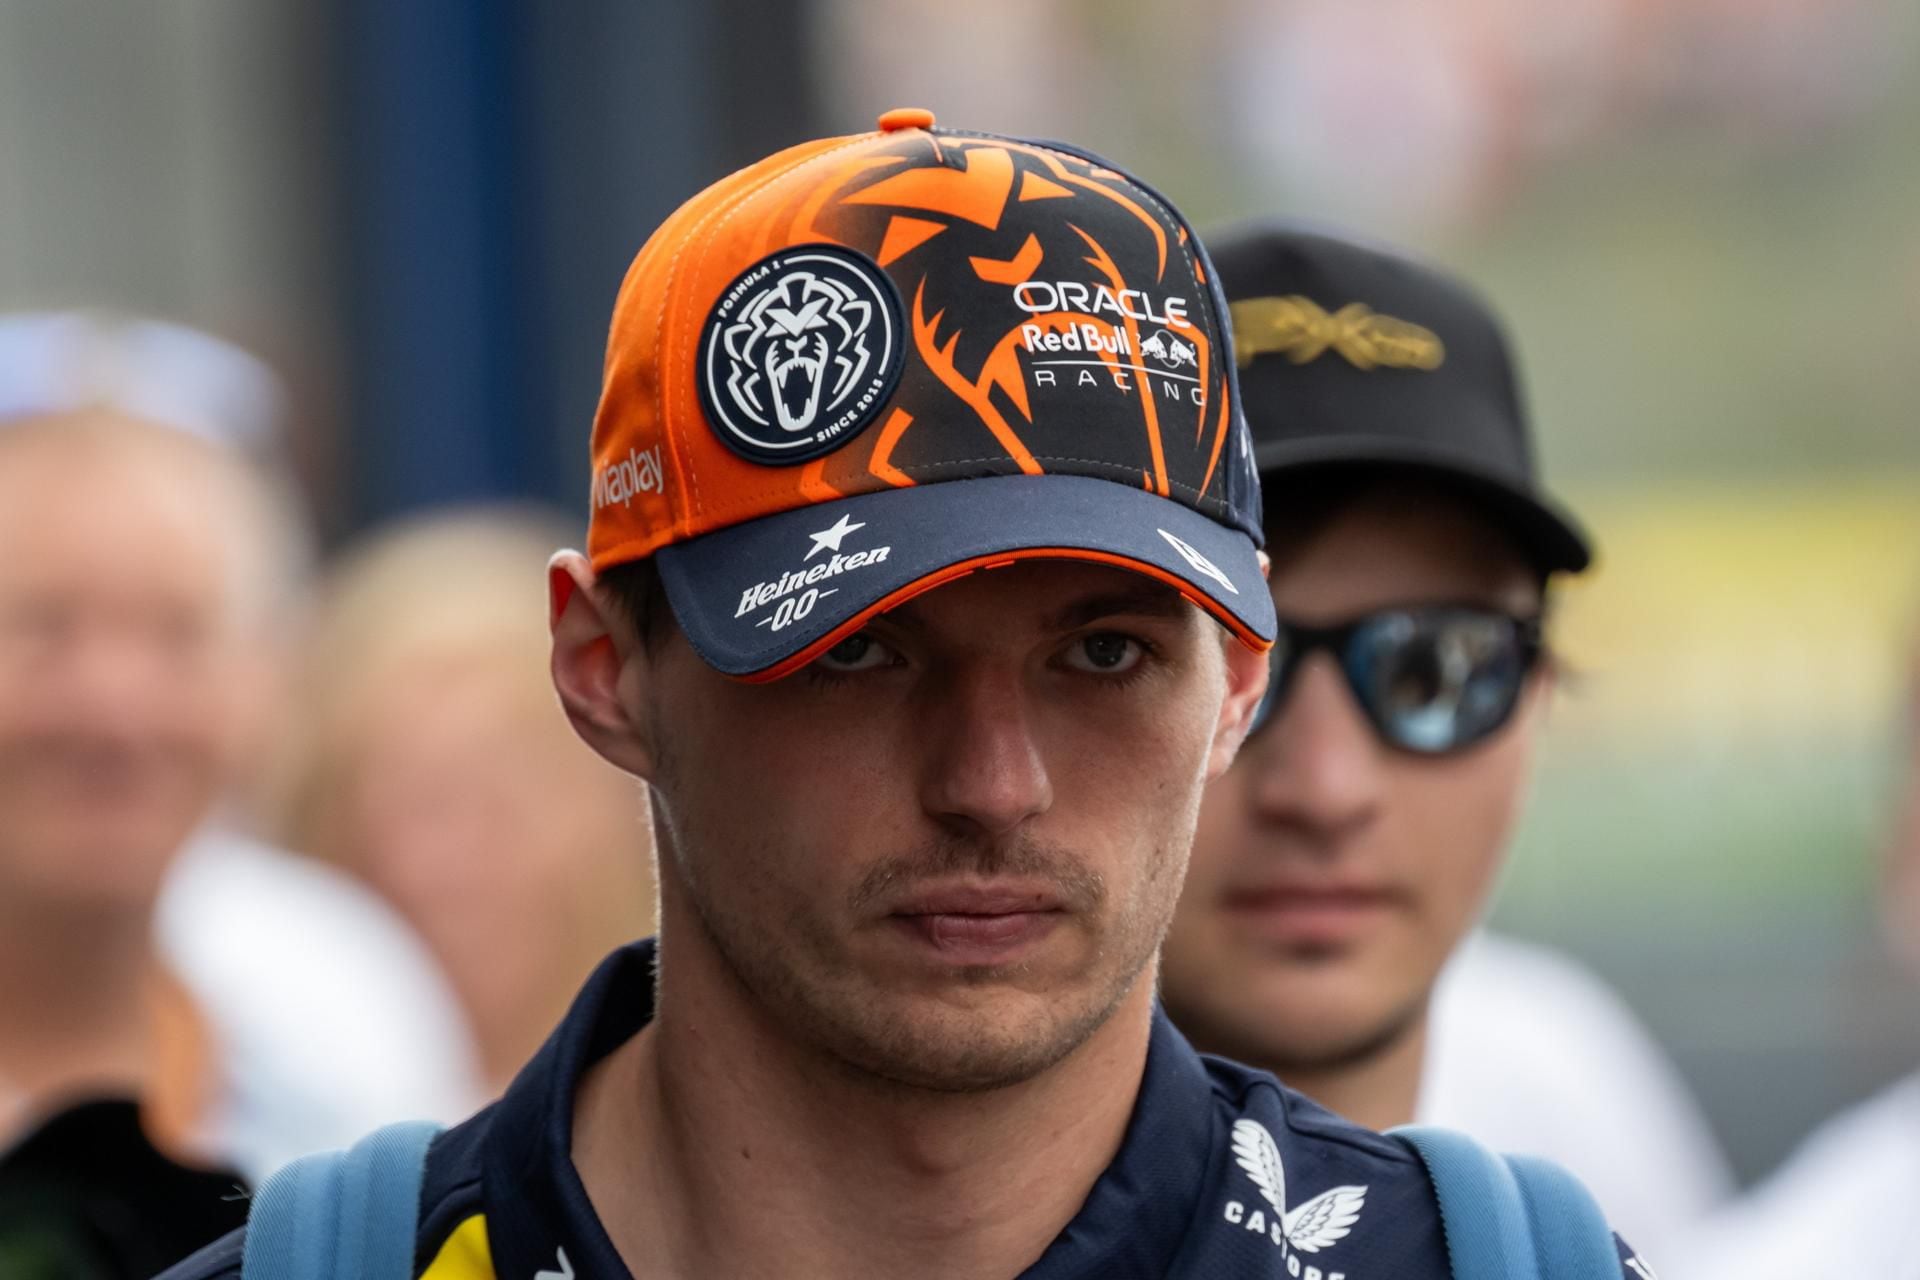 Max Verstappen lleva tres carreras seguidas sin ganar, por lo que Red Bull tomará medidas. (Foto: EFE)